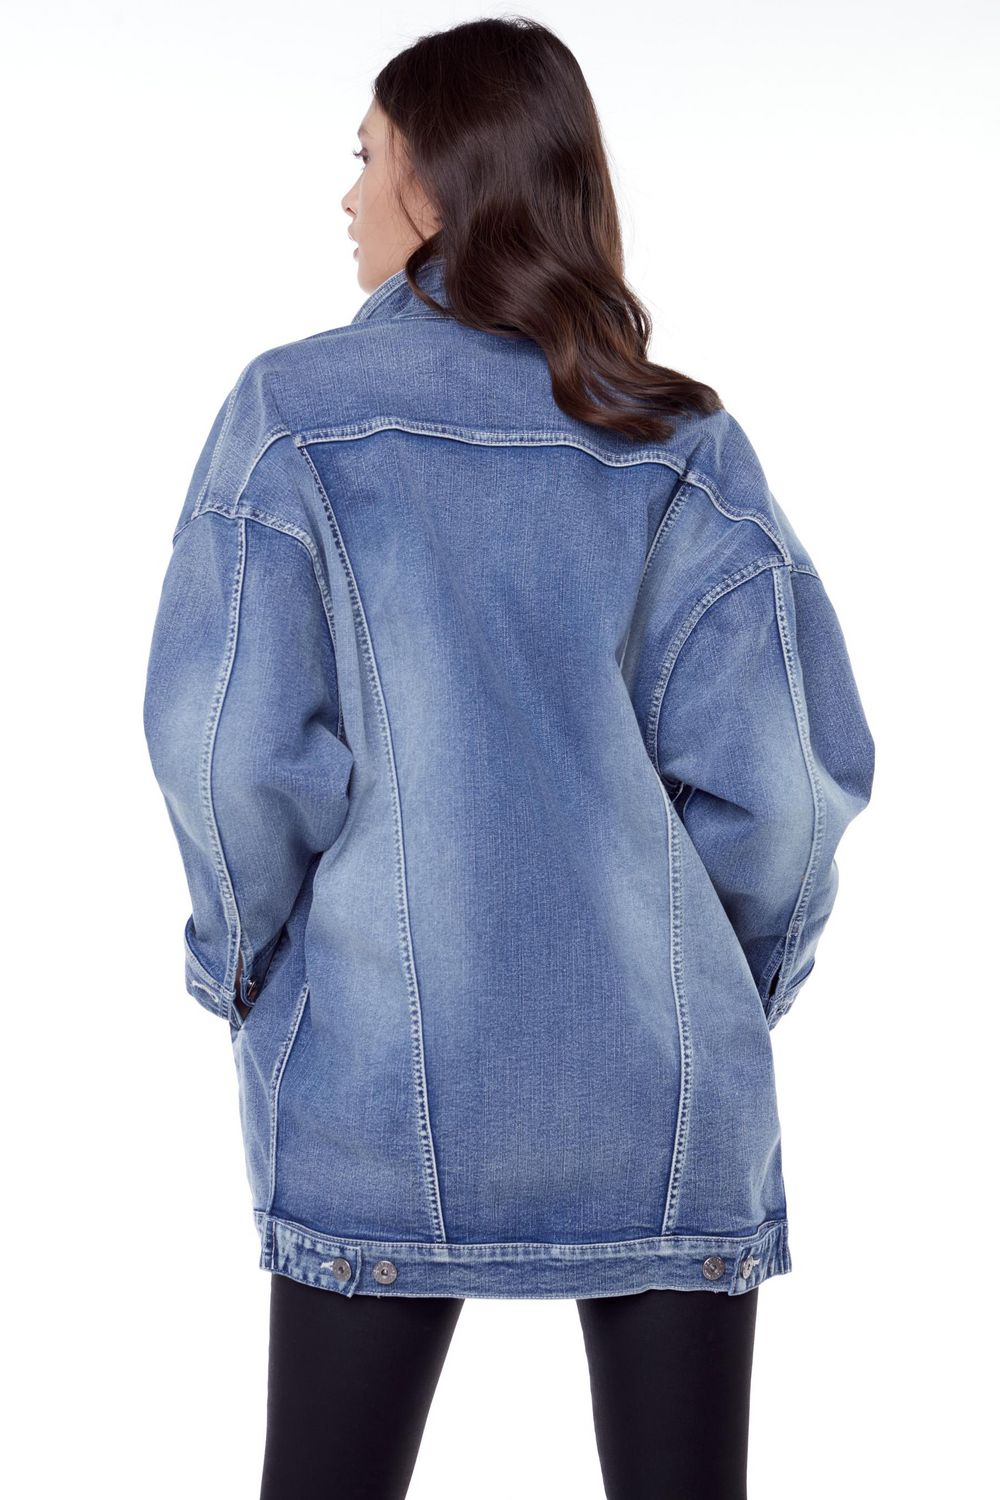 Jeaniologie ™ Women Oversized Denim Trucker Jacket